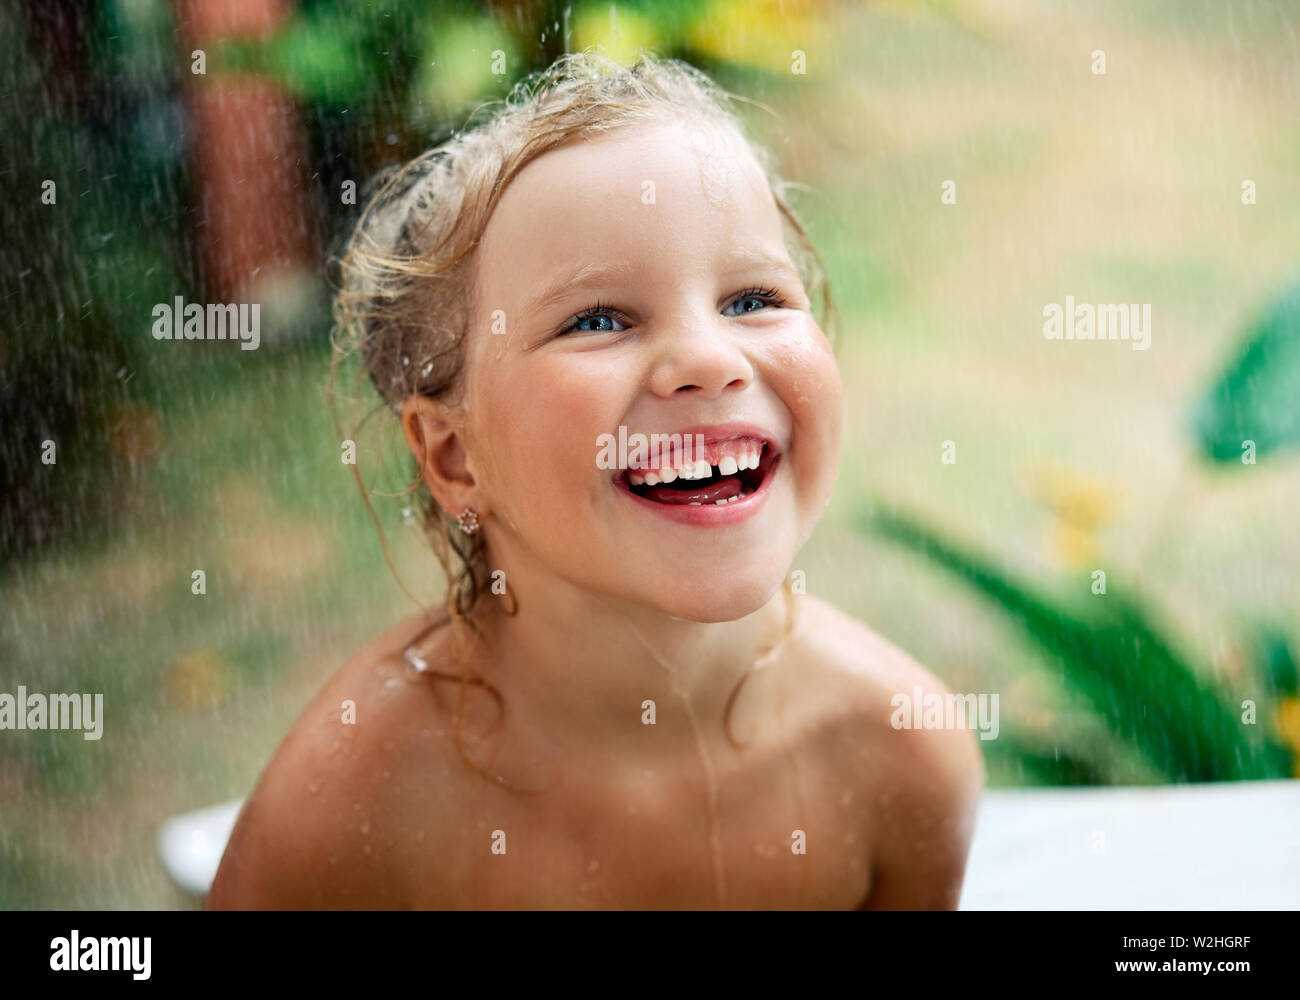 Close up portrait of cute little girl vivez l'été à la pluie. Gouttes tomber sur son visage, sourire de l'enfant. l'enfance, les émotions et les vacances Banque D'Images